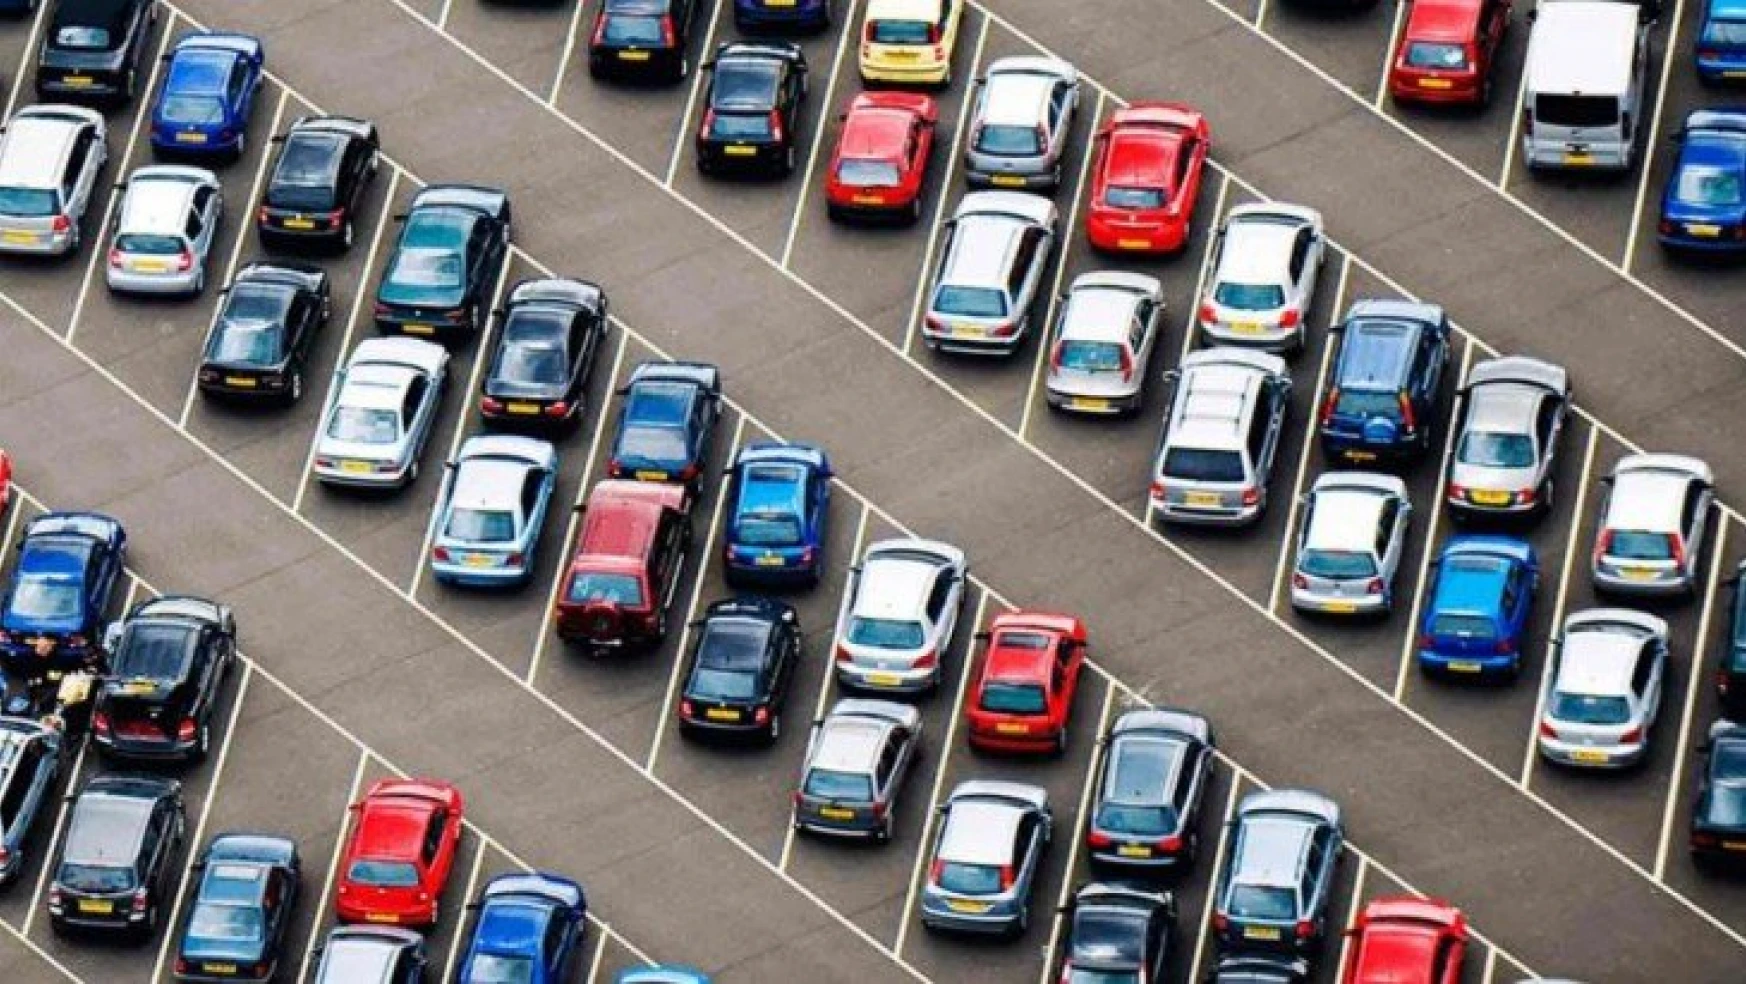 Malatya'da trafiğe kayıtlı araç sayısı Temmuz ayı sonu itibarıyla 190 490 oldu.